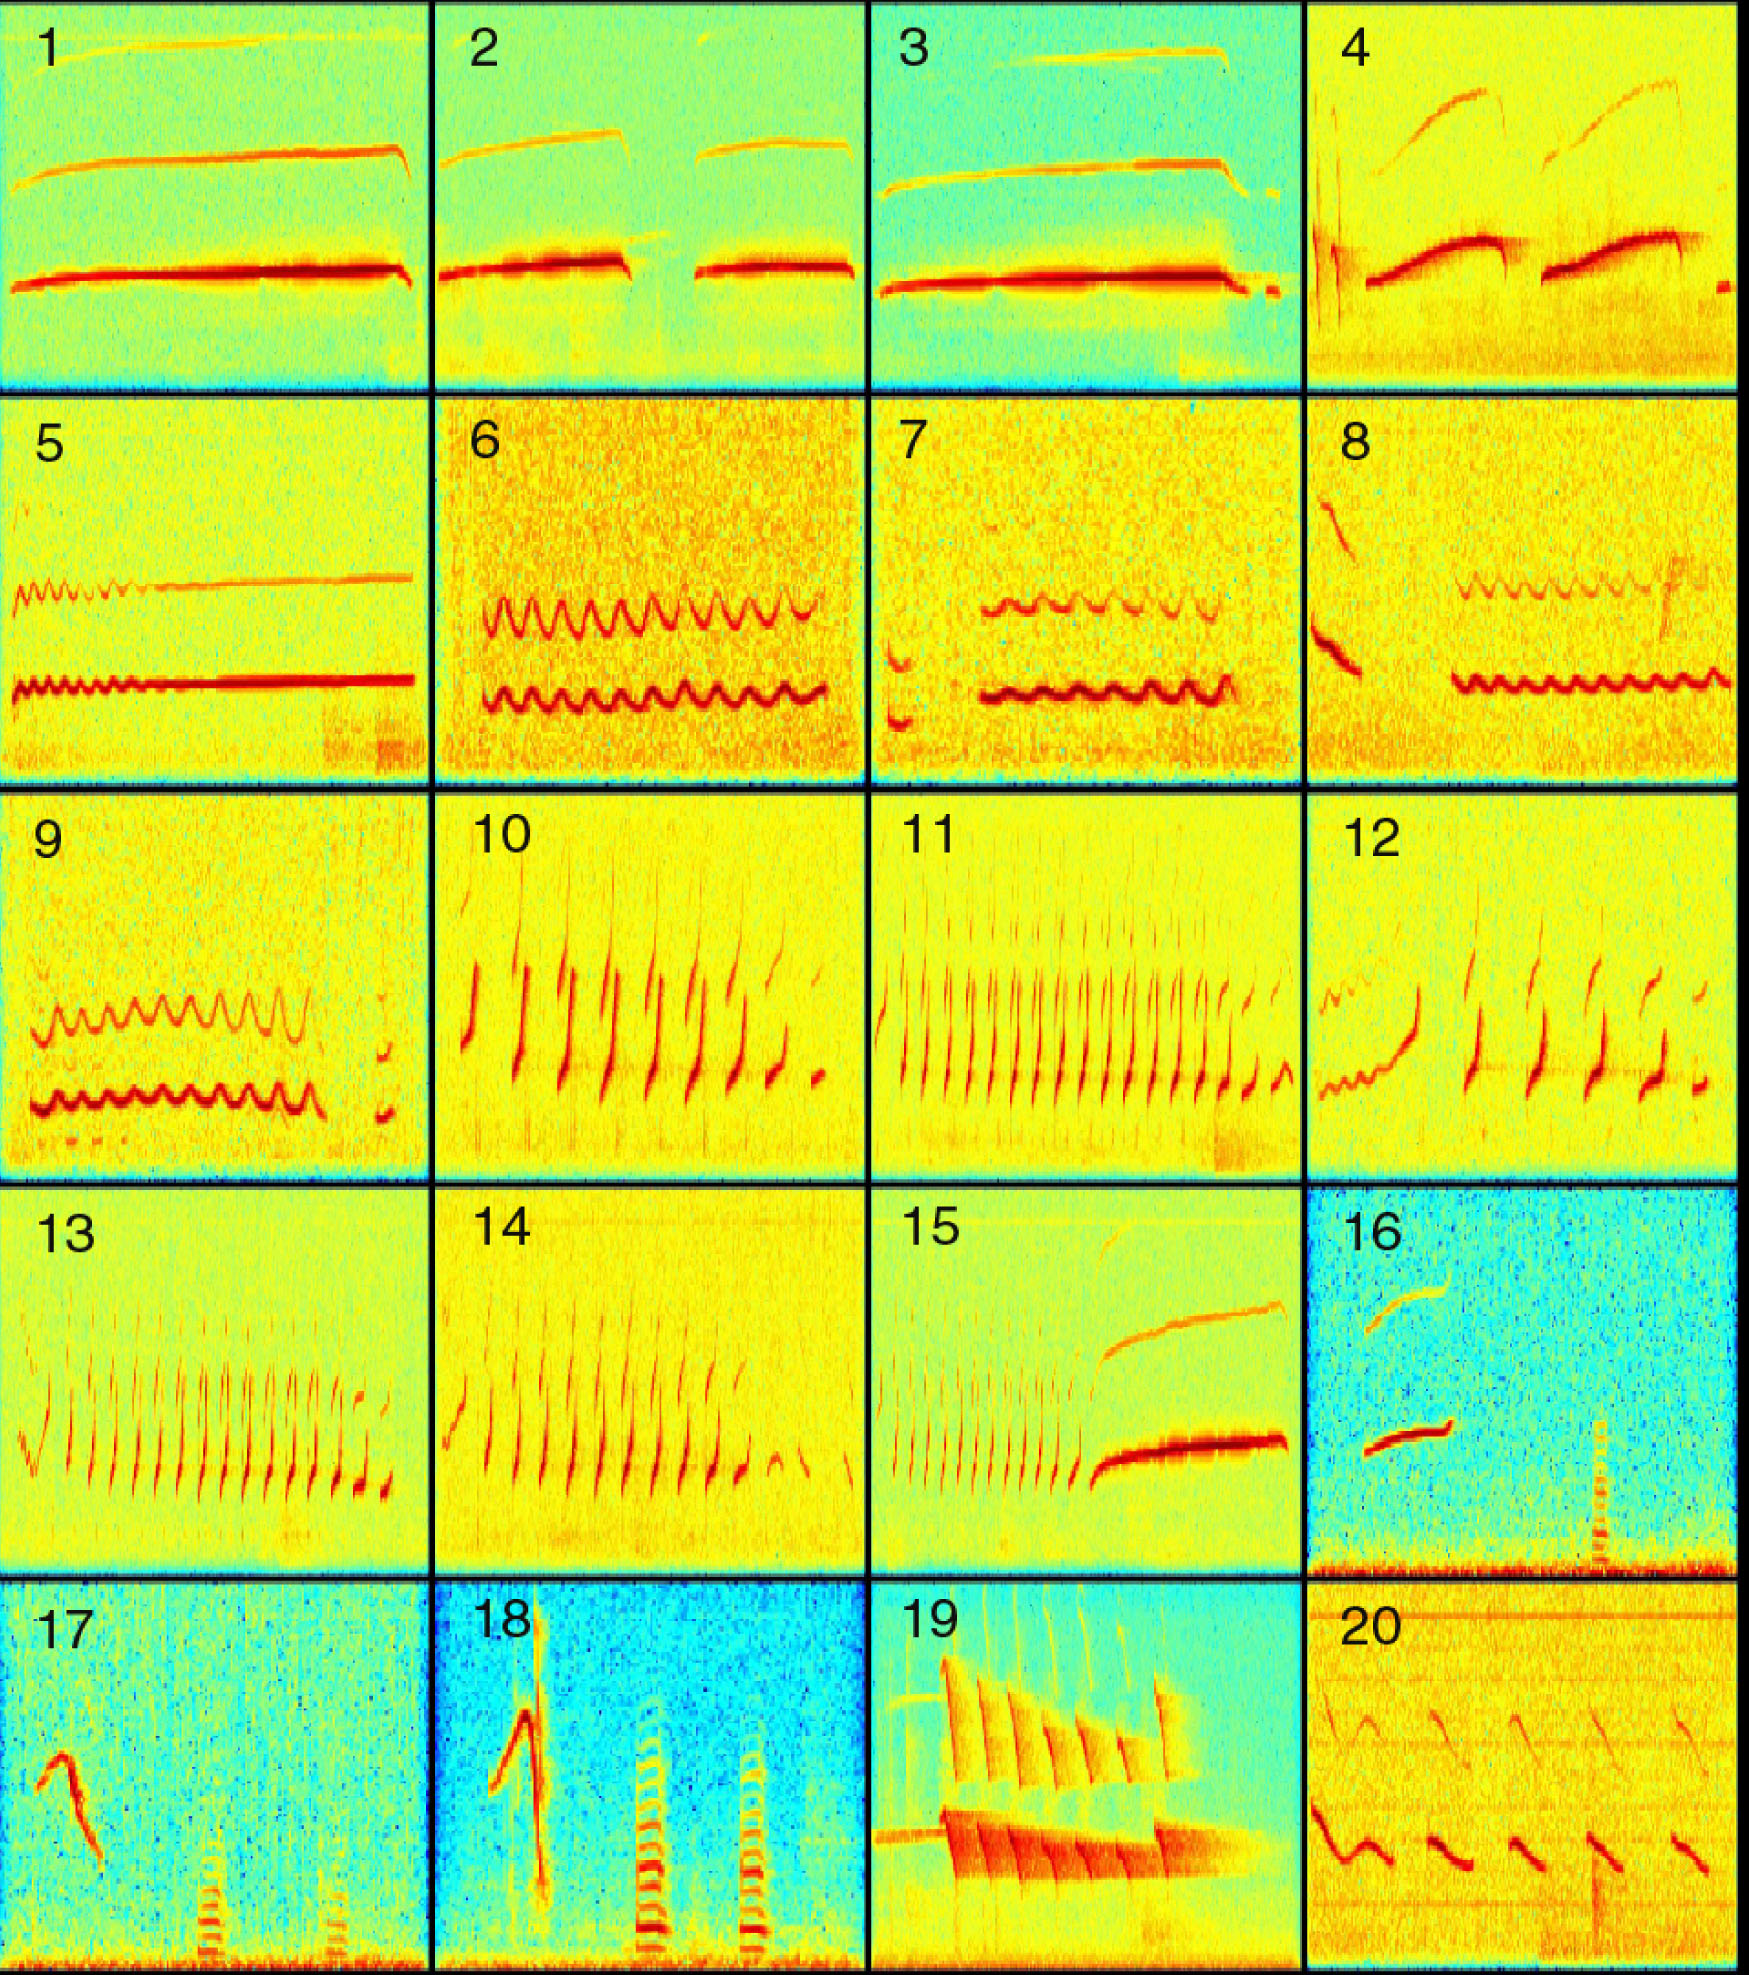 Vocalization Spectrograms